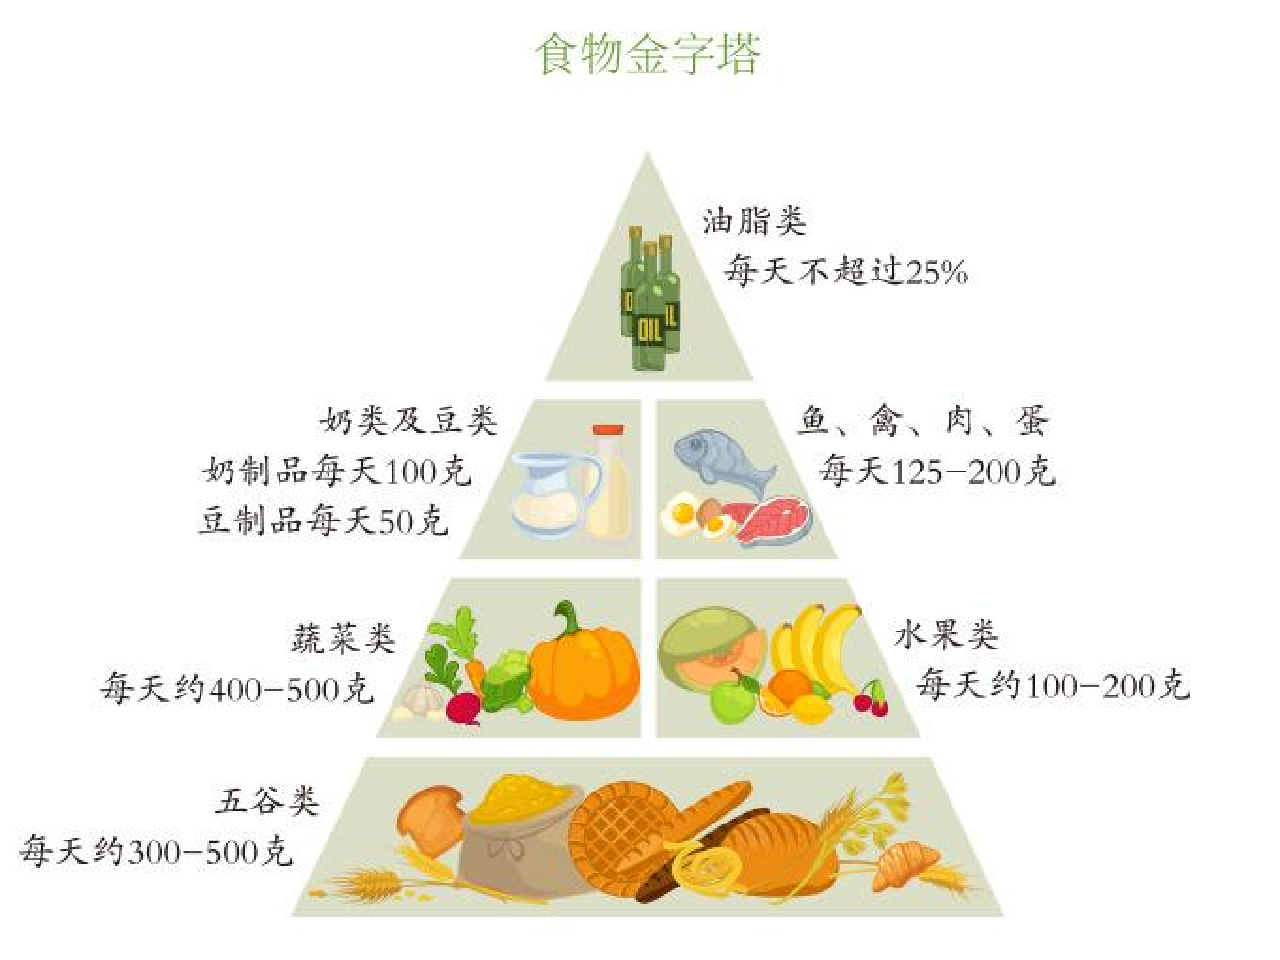 减肥食物金字塔图片